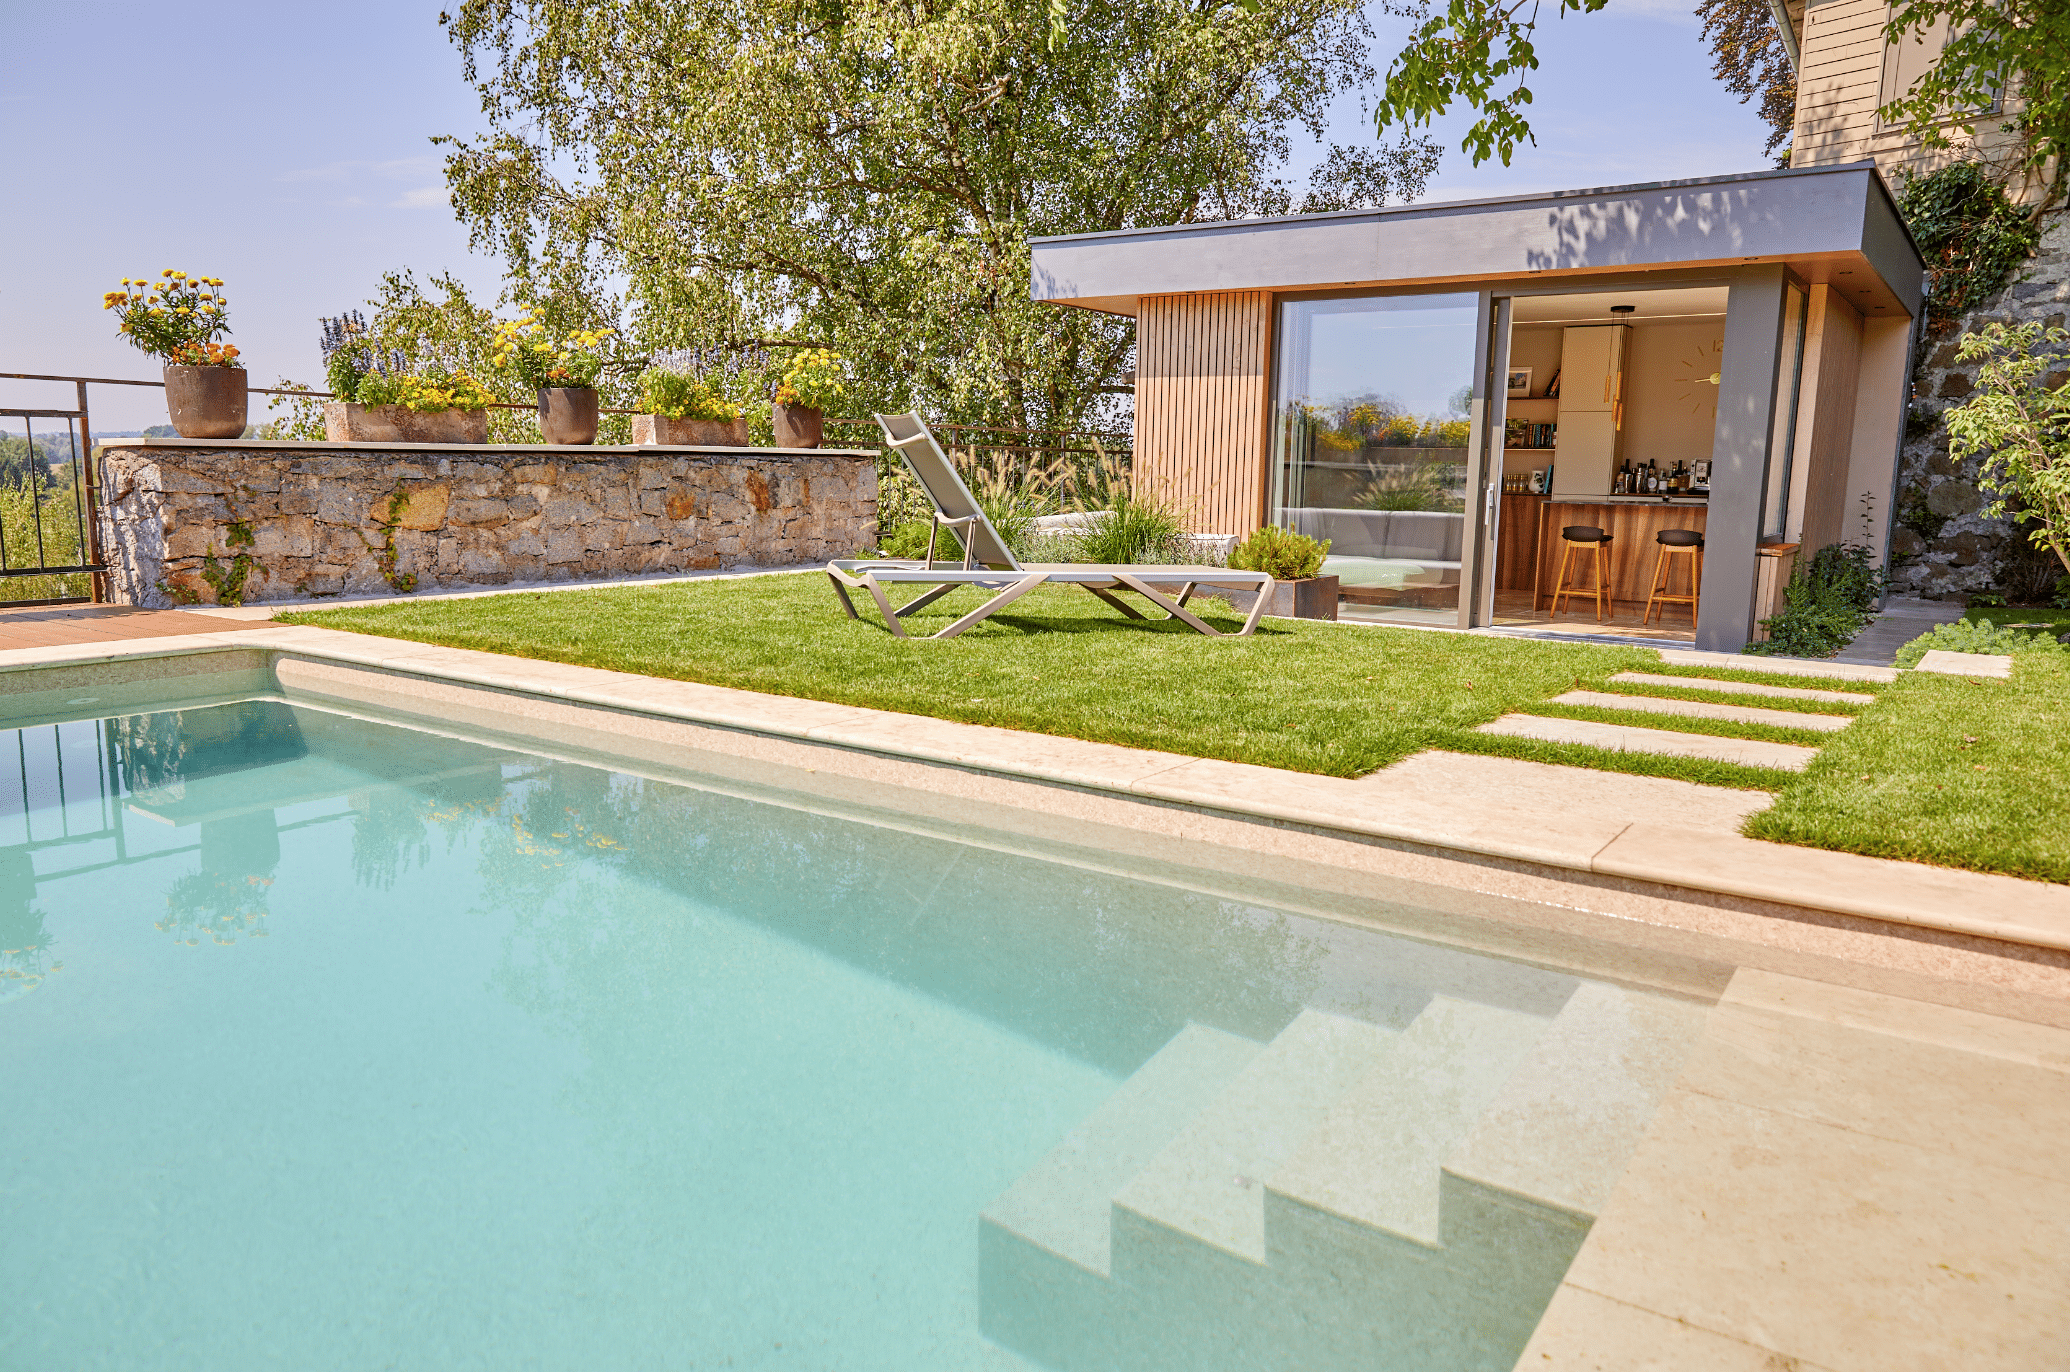 Friedrich Reitinger Schwimmbad und Wellness zeigt einen in den Boden eingelassenen, rechteckigen Pool in einem schönen Garten mit einer Gartenhütte und Sonnenliegen auf dem Rasen.